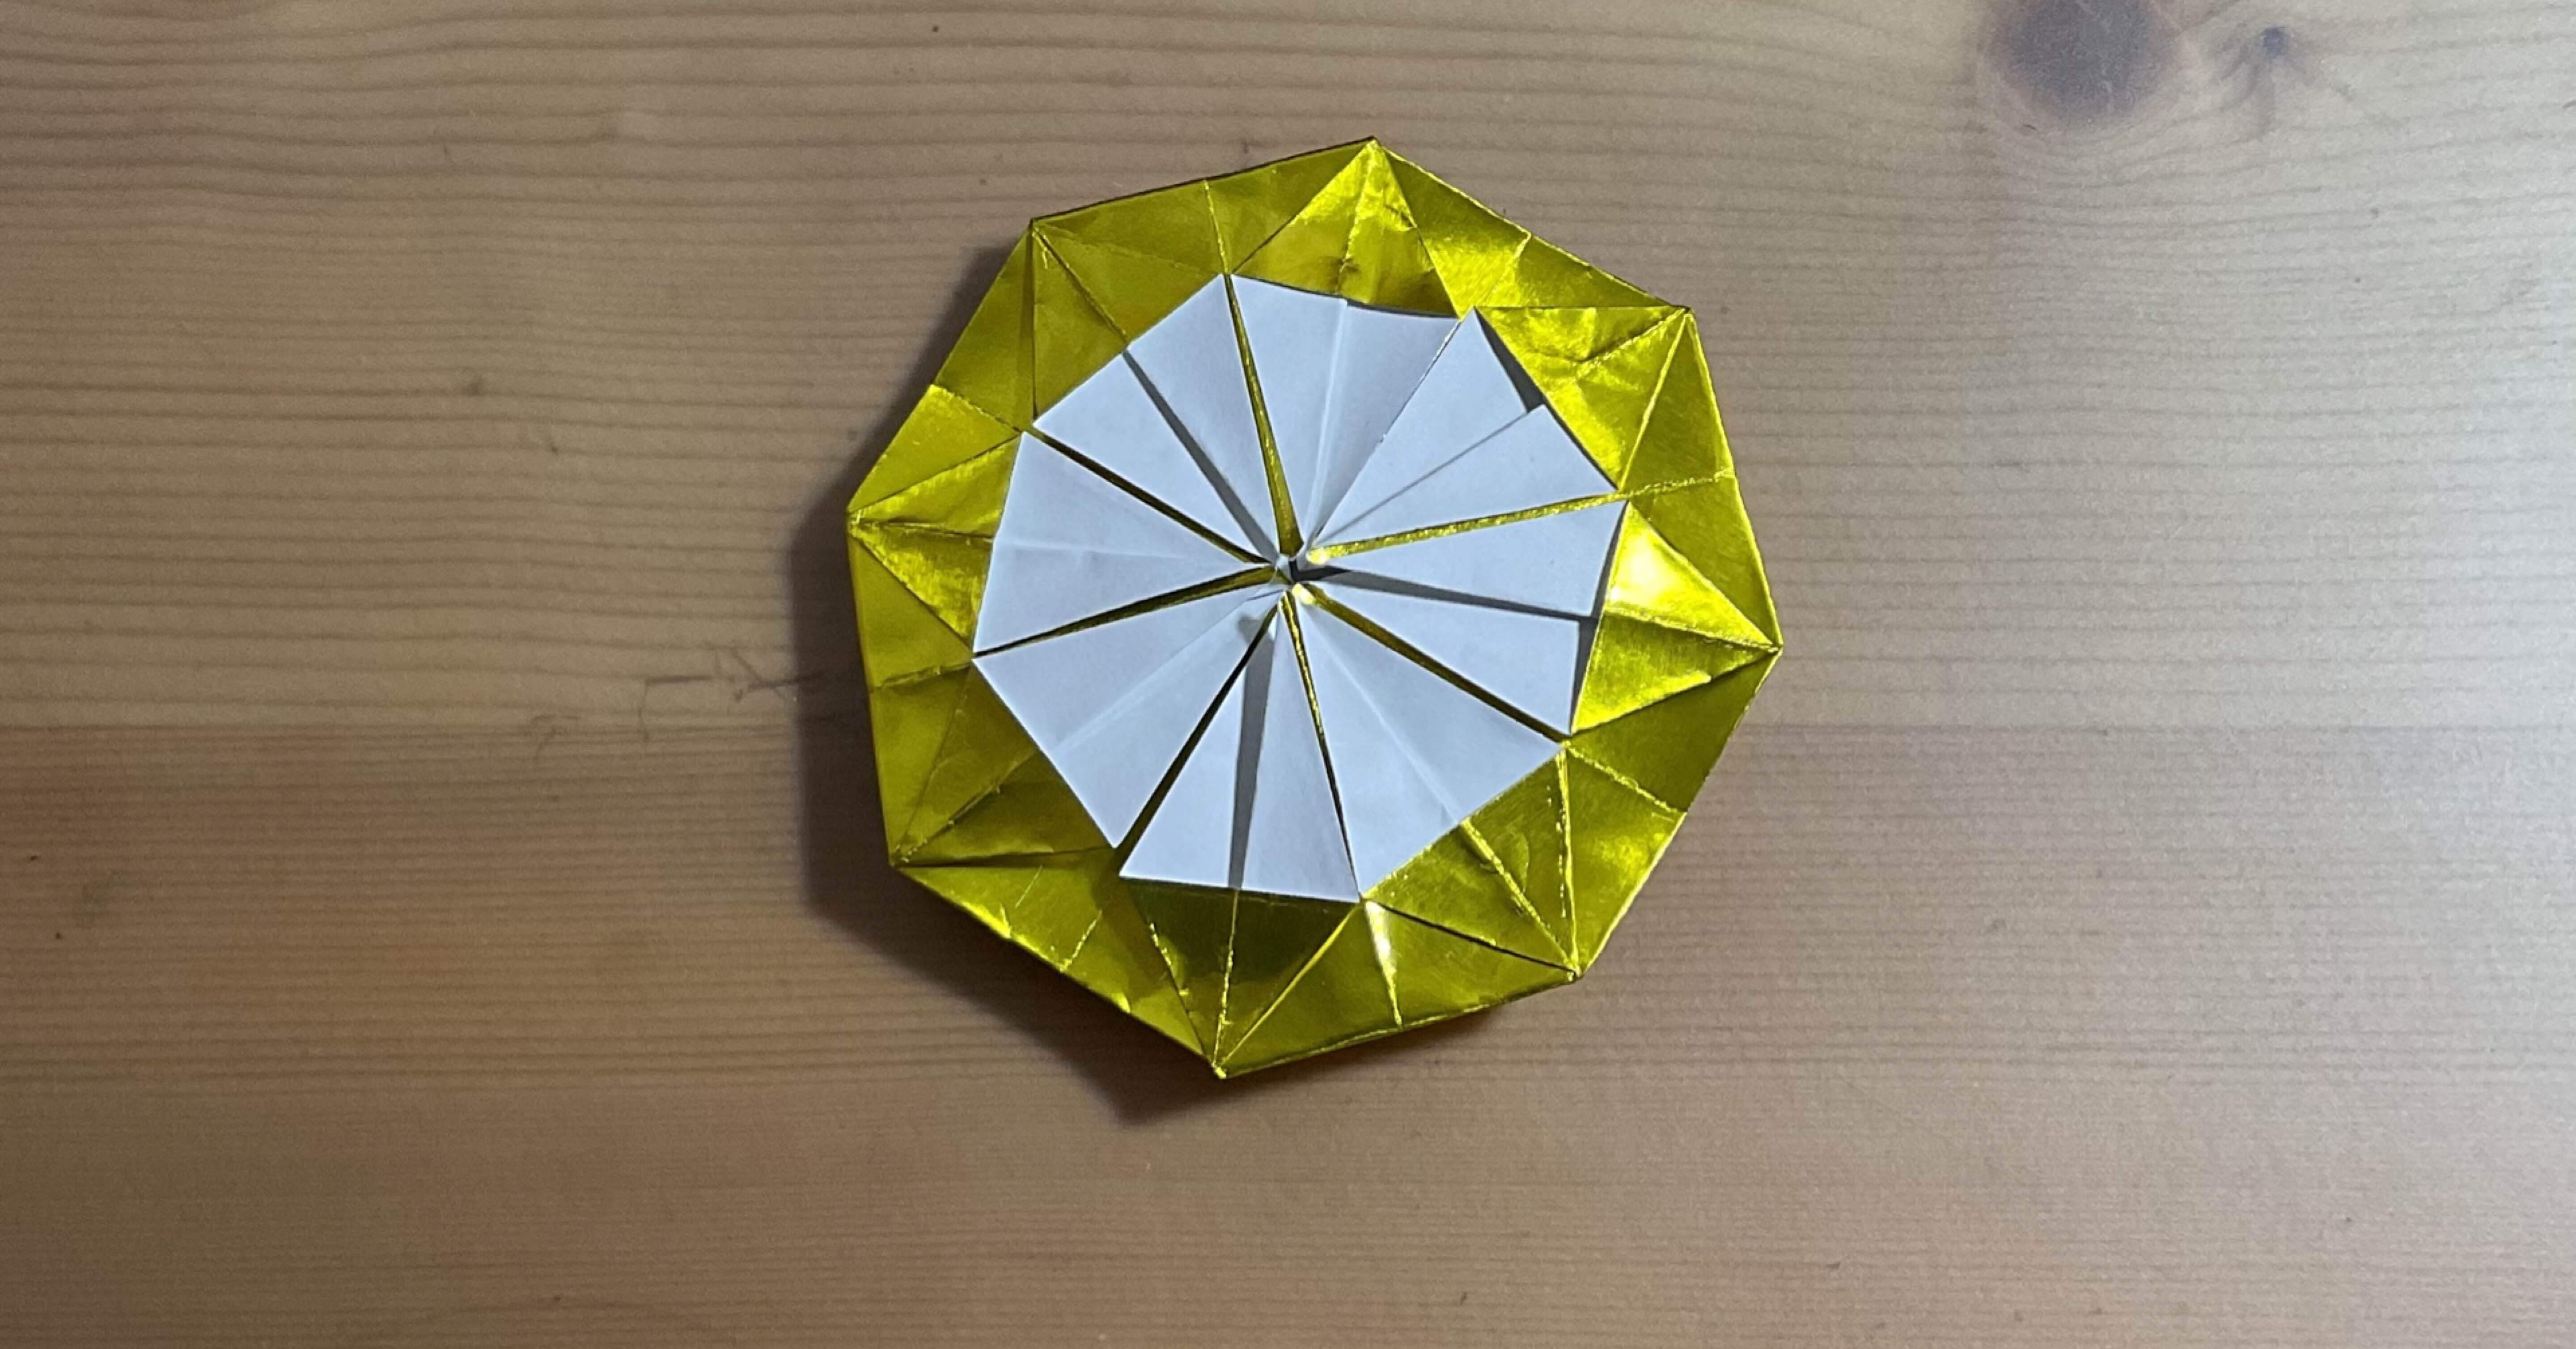 折り紙でメダルを折ってみよう Origami Paper Medal Folding ともすぅ折り紙 Note